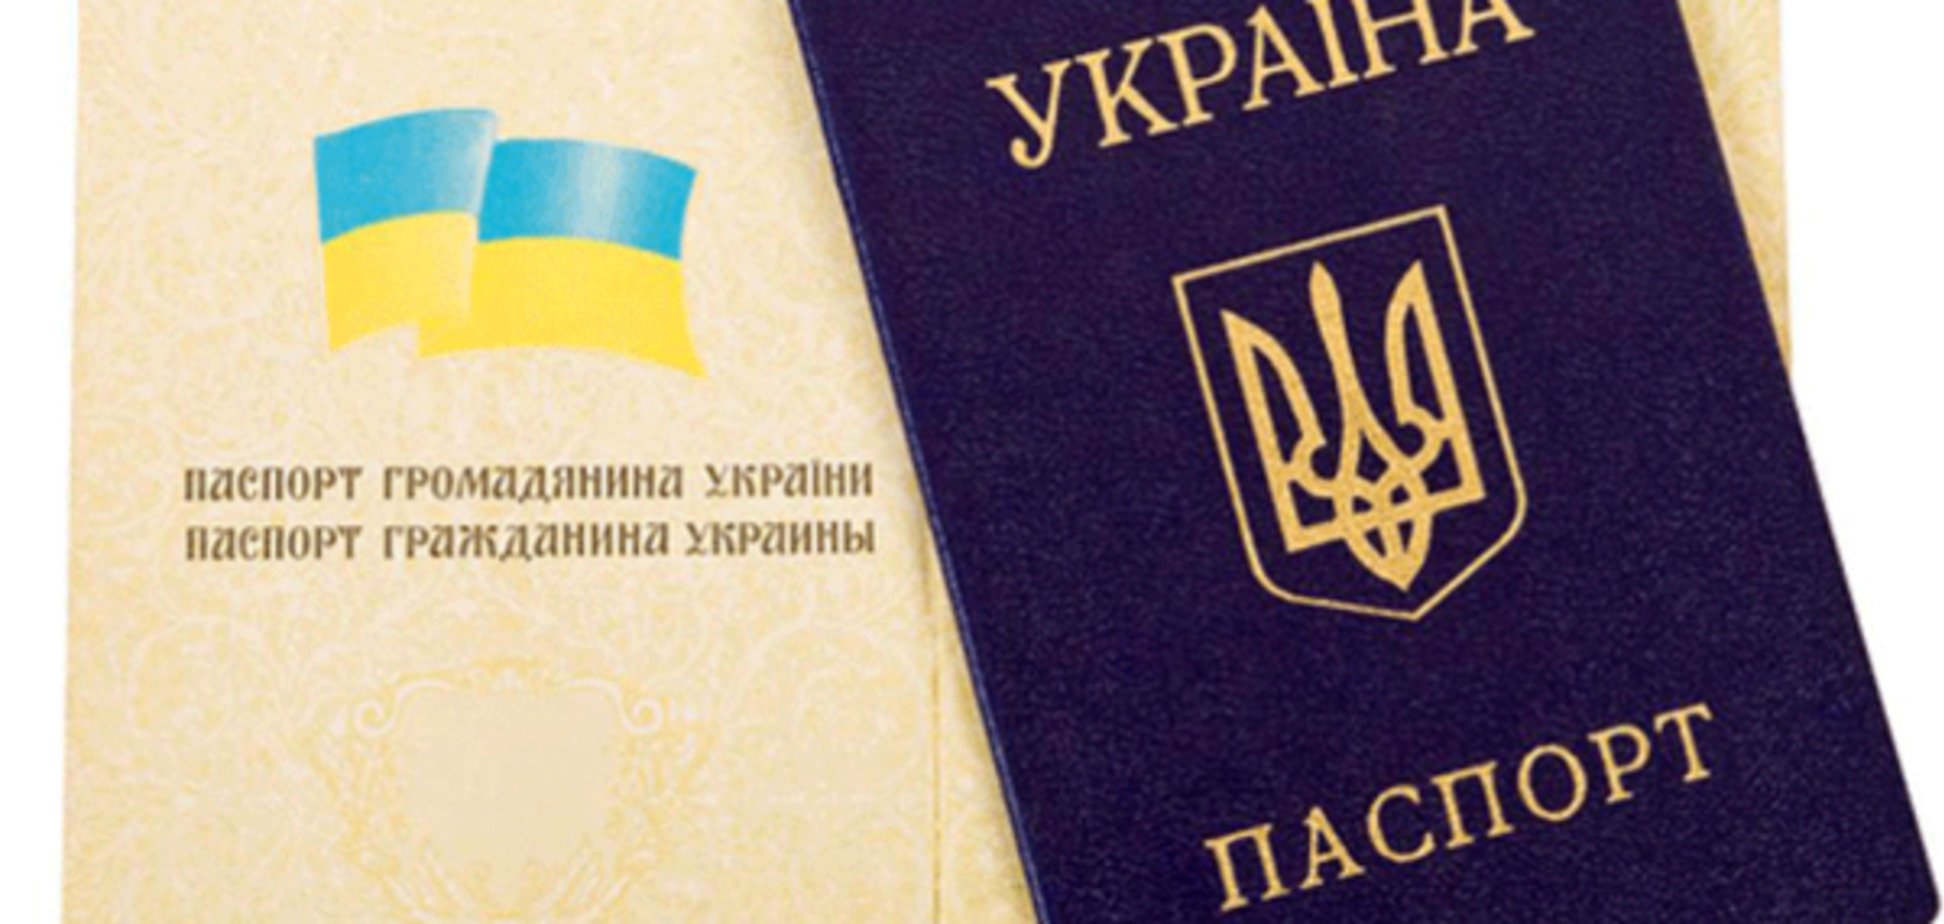 В Україні ініціювали повернення графи 'національність' в усі документи